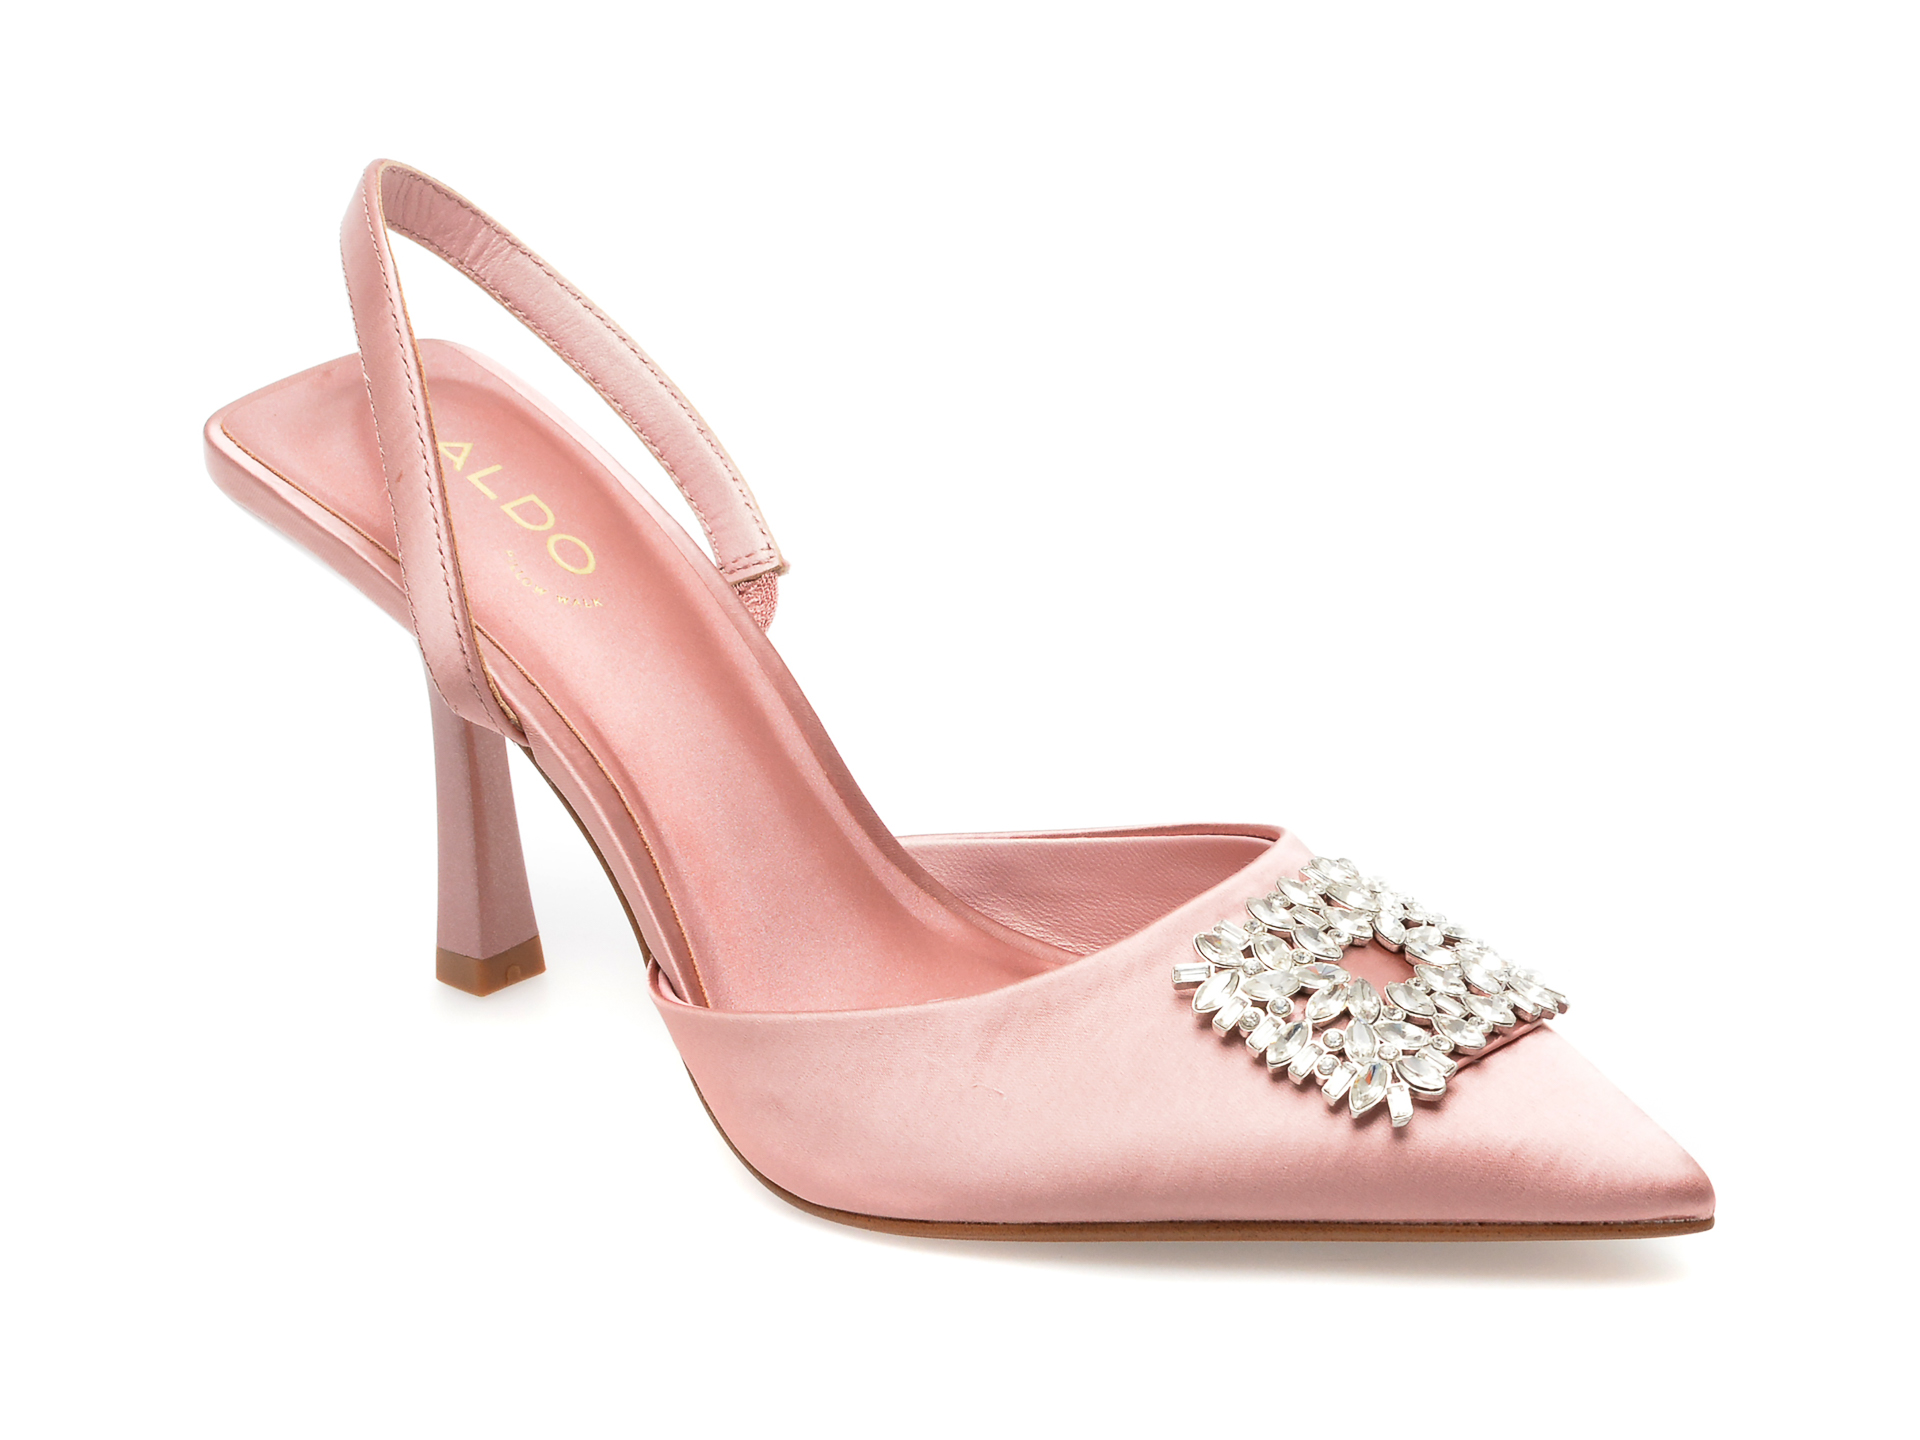 Pantofi ALDO roz, LAREINE950, din material textil Aldo